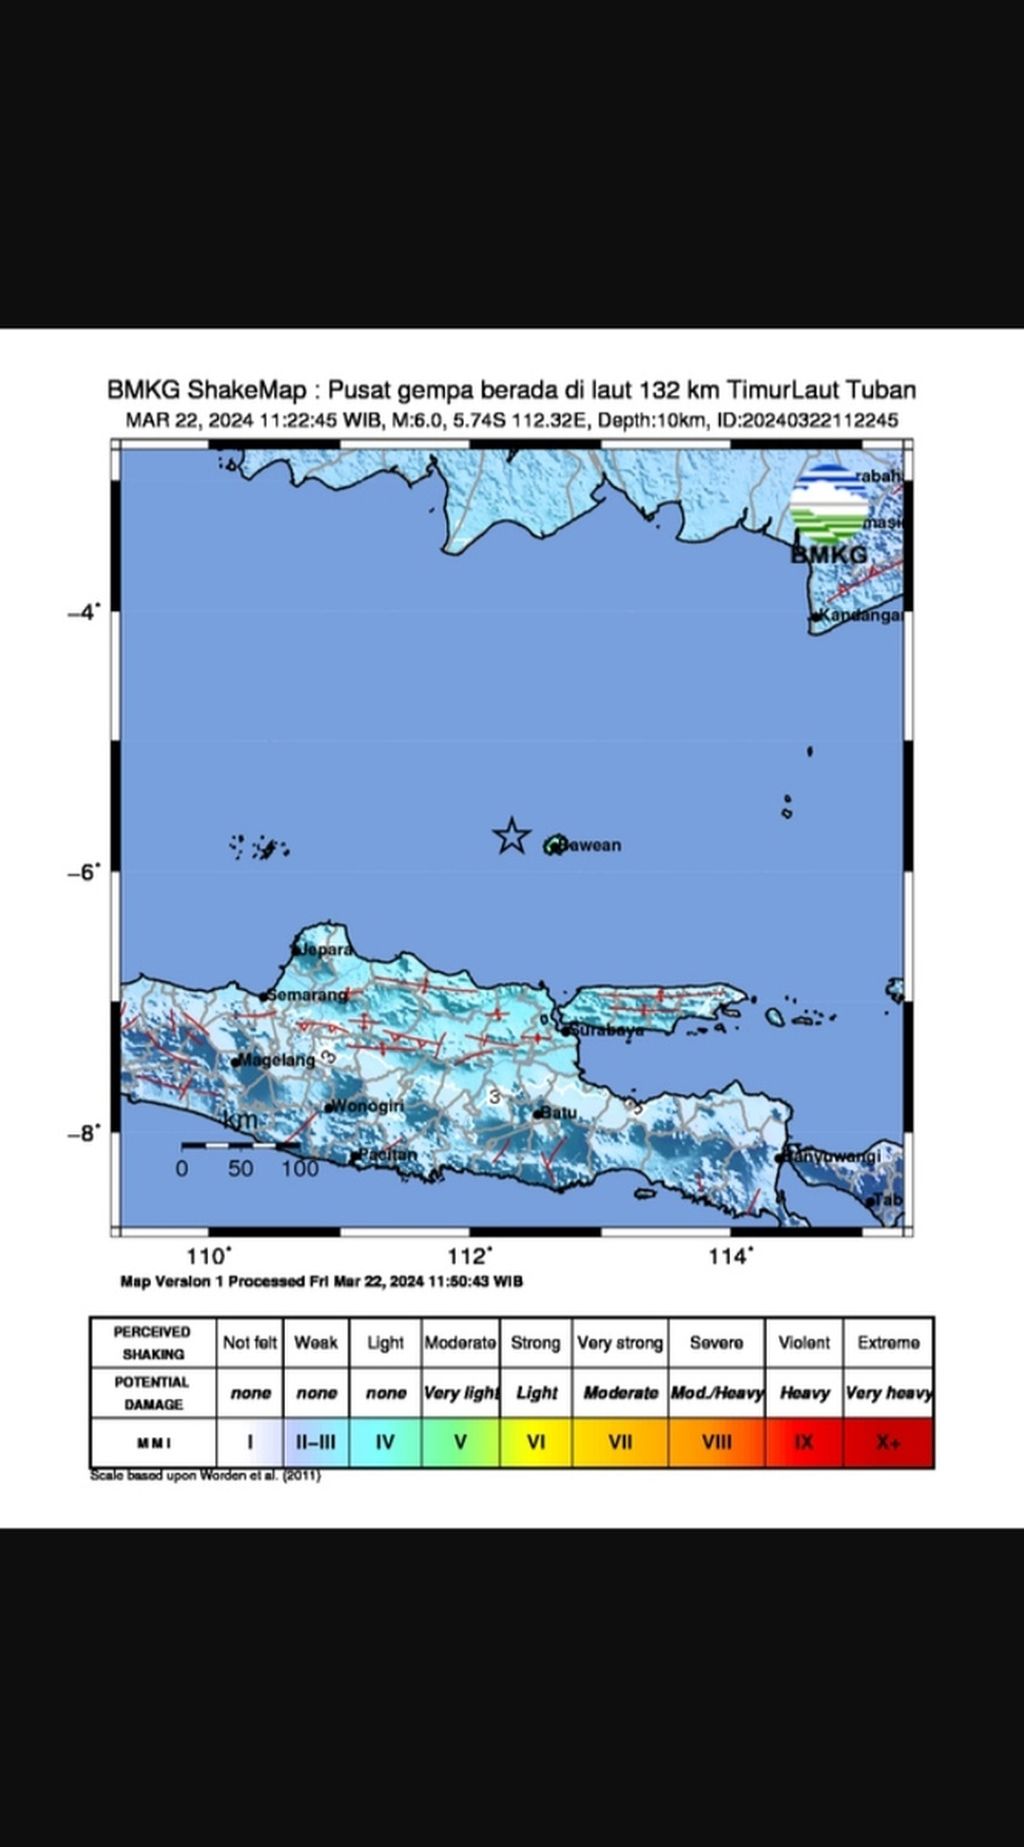 Tangkapan layar pada akun resmi BMKG tentang gempa bumi di Laut Jawa pada Jumat (22/3/2024) pukul 11.22.